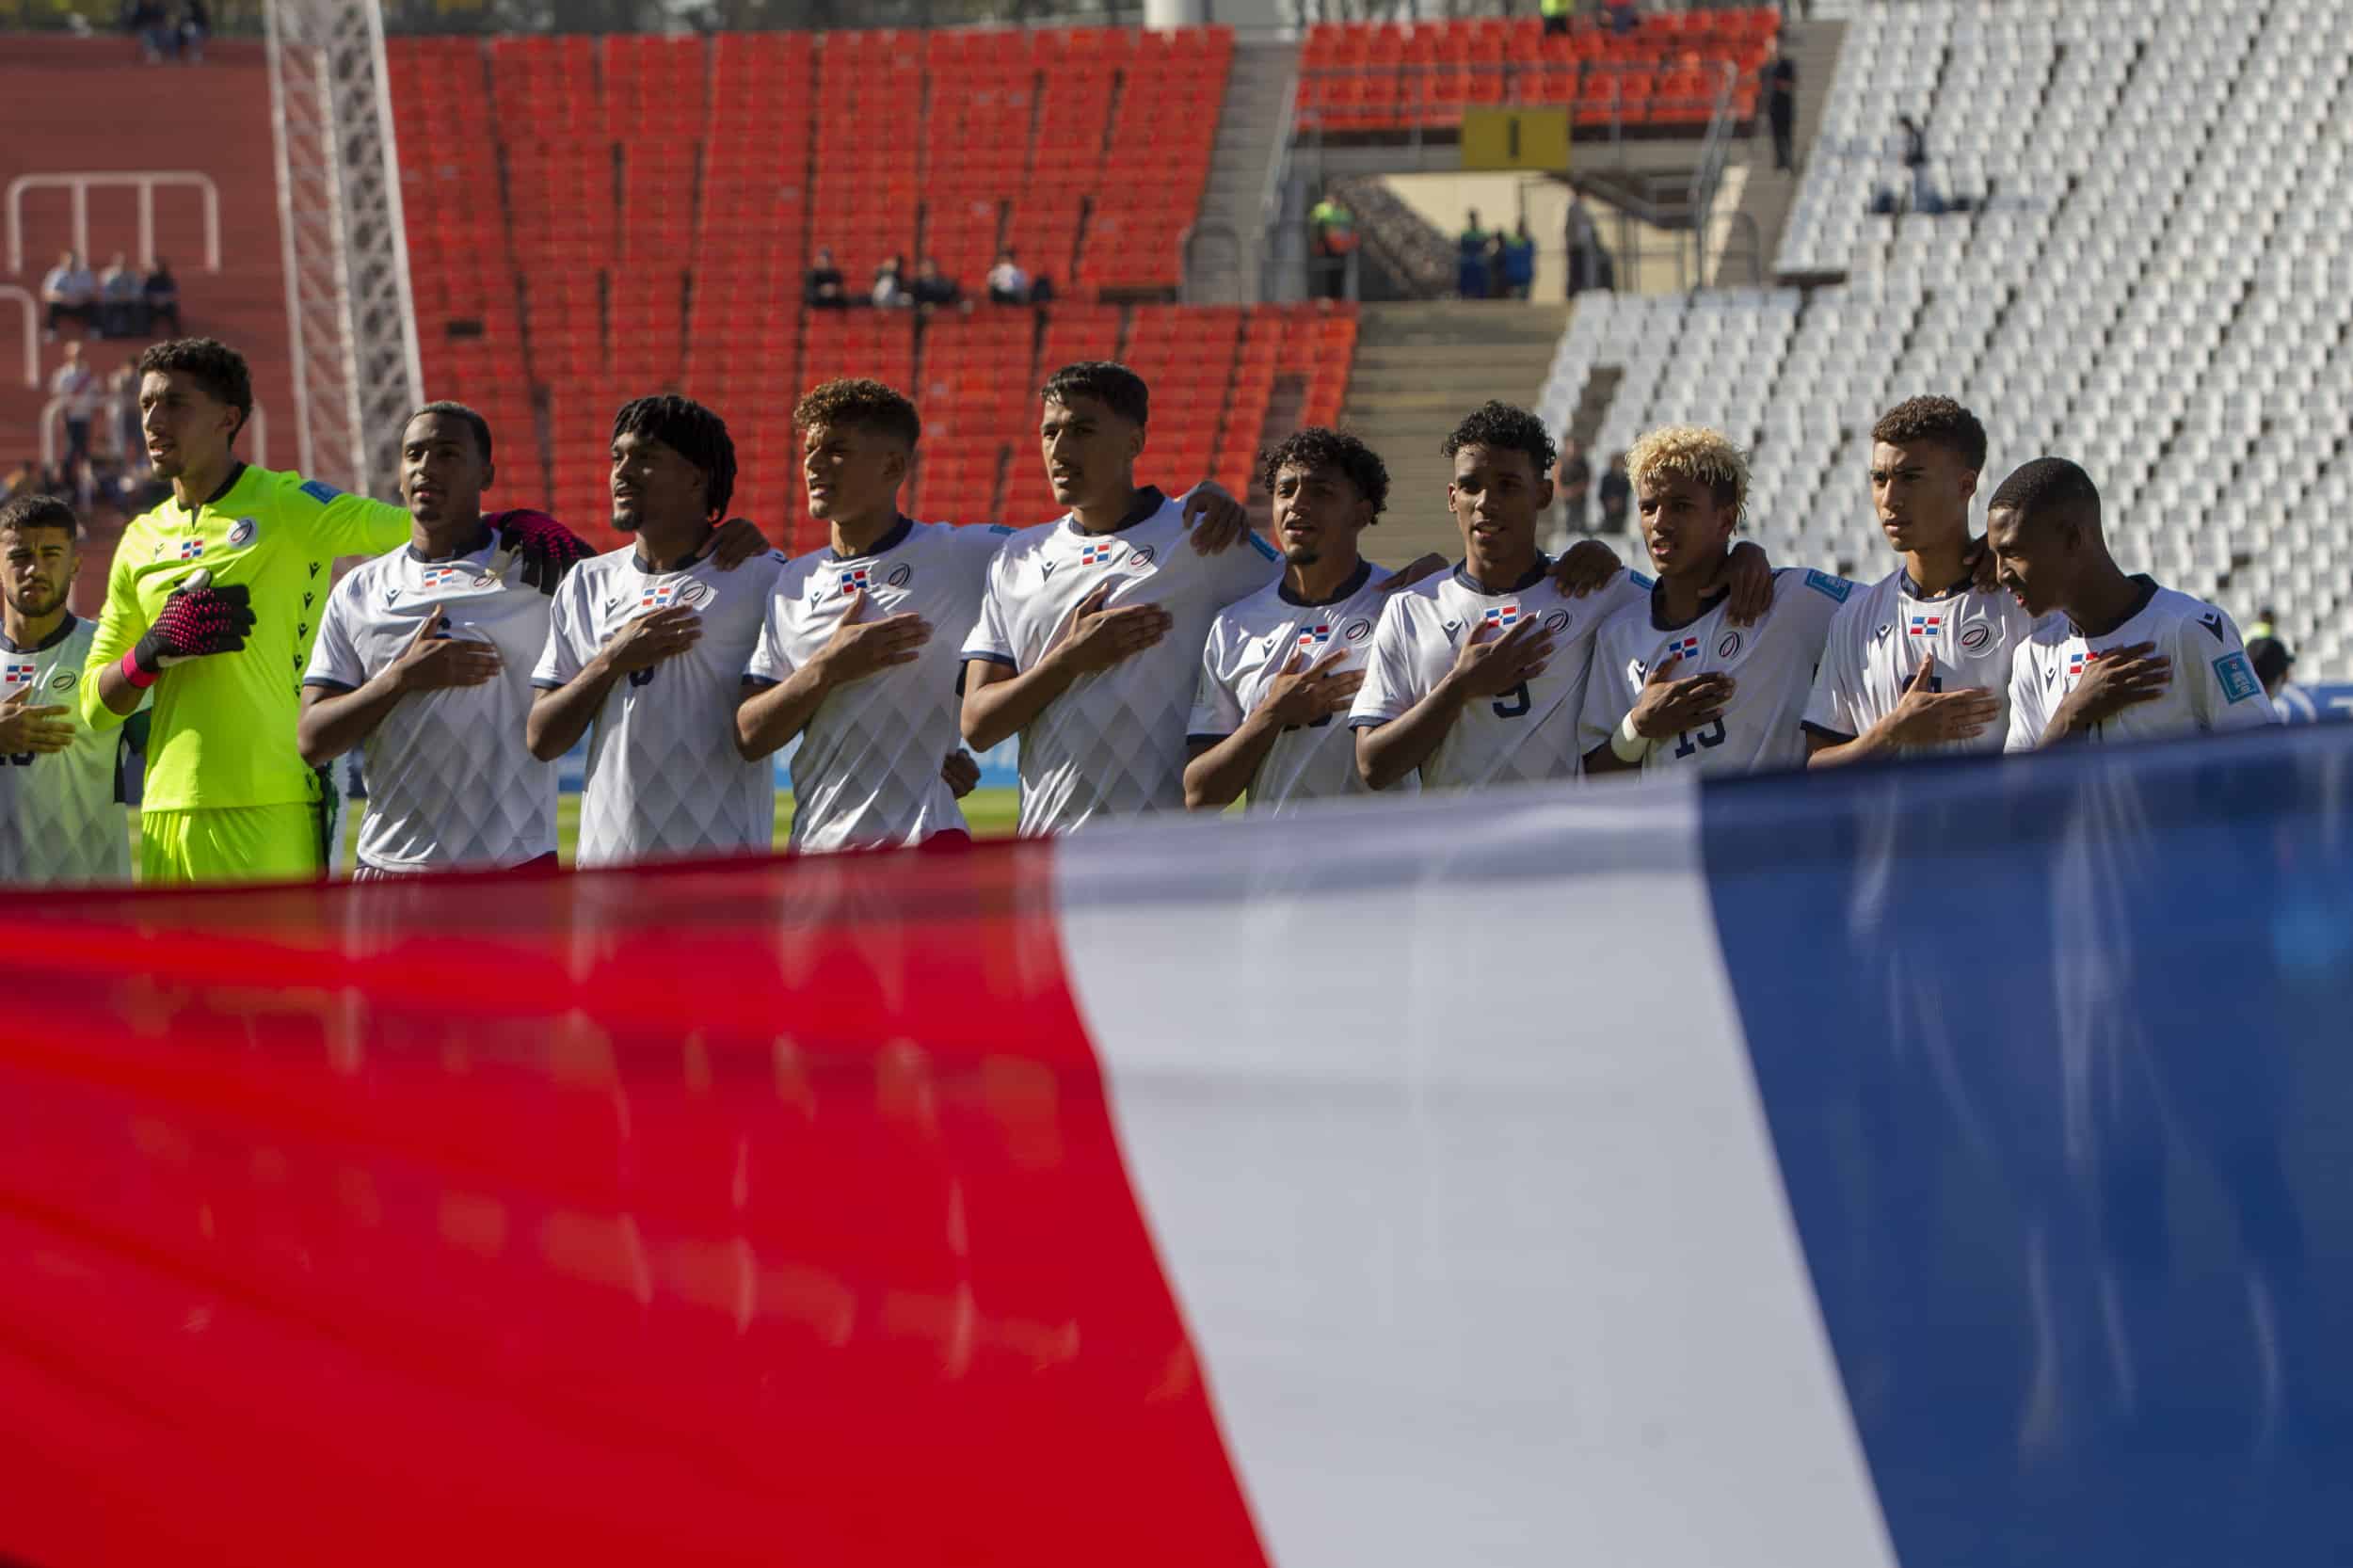 La Selección de República Dominicana canta a capela el Himno Nacional Dominicano tras un fallo en la megafonía del Estadio Malvinas Argentinas.